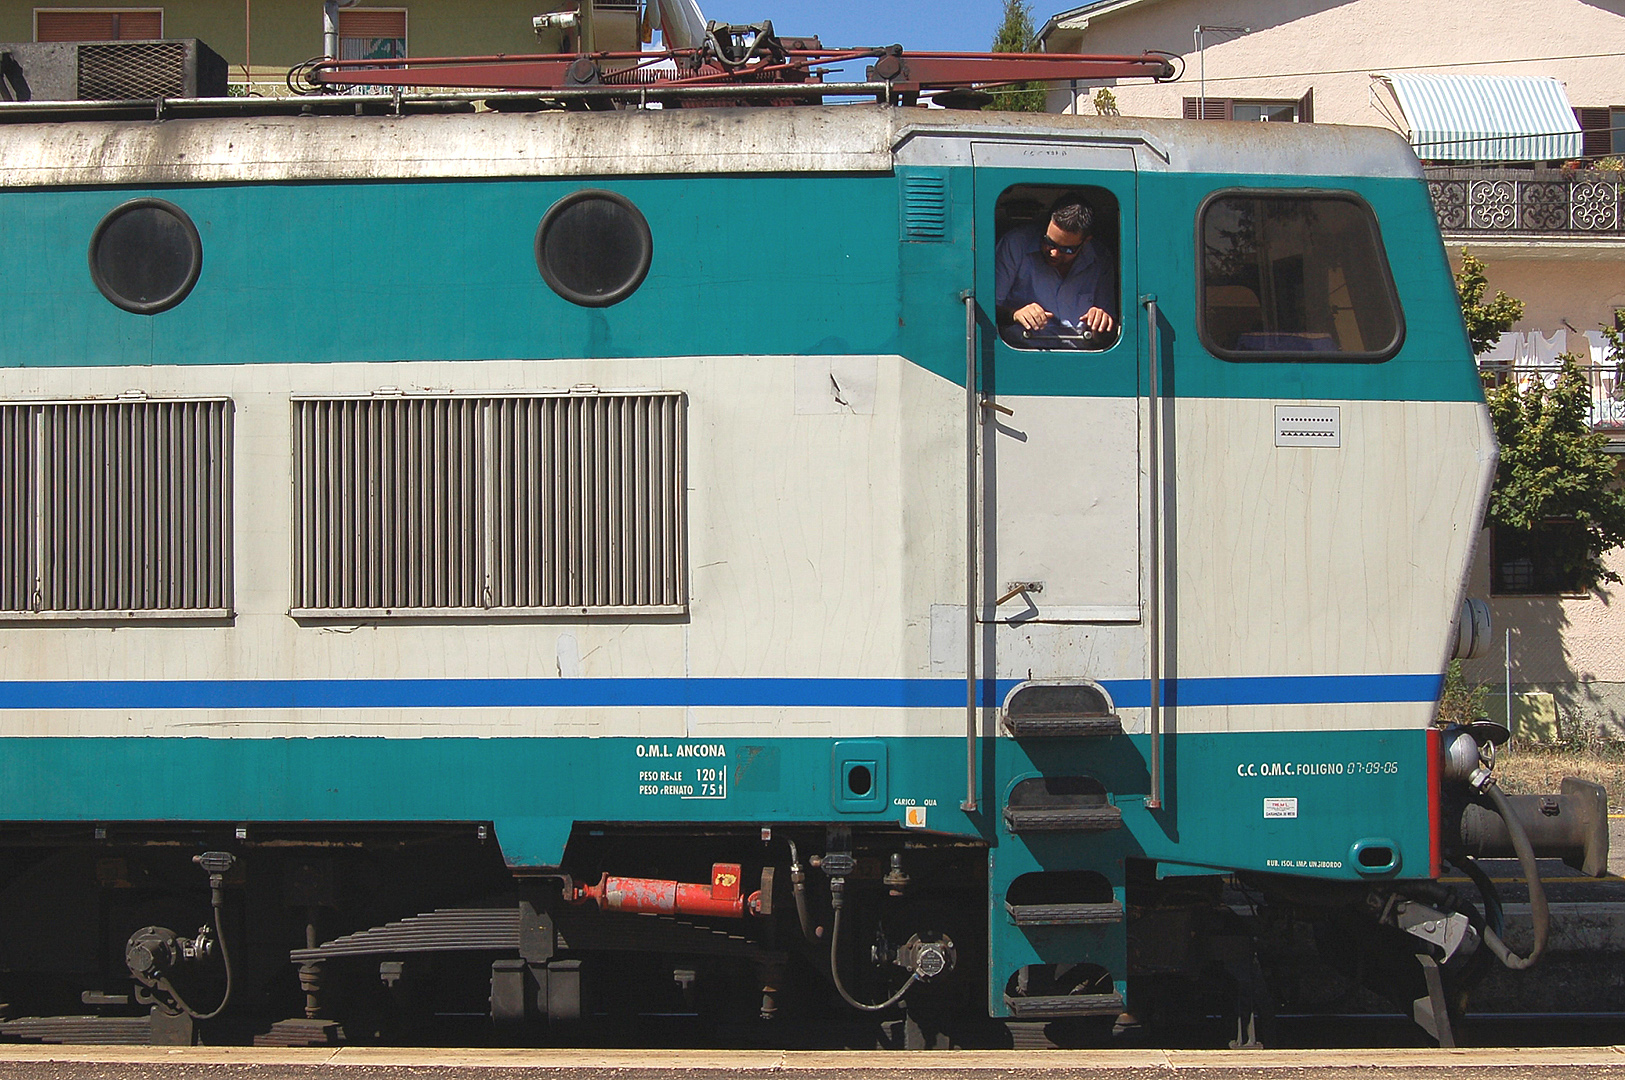 Locomotief E 656 (Abruzzen, Itali), Locomotive E656 (Abruzzo, Italy)